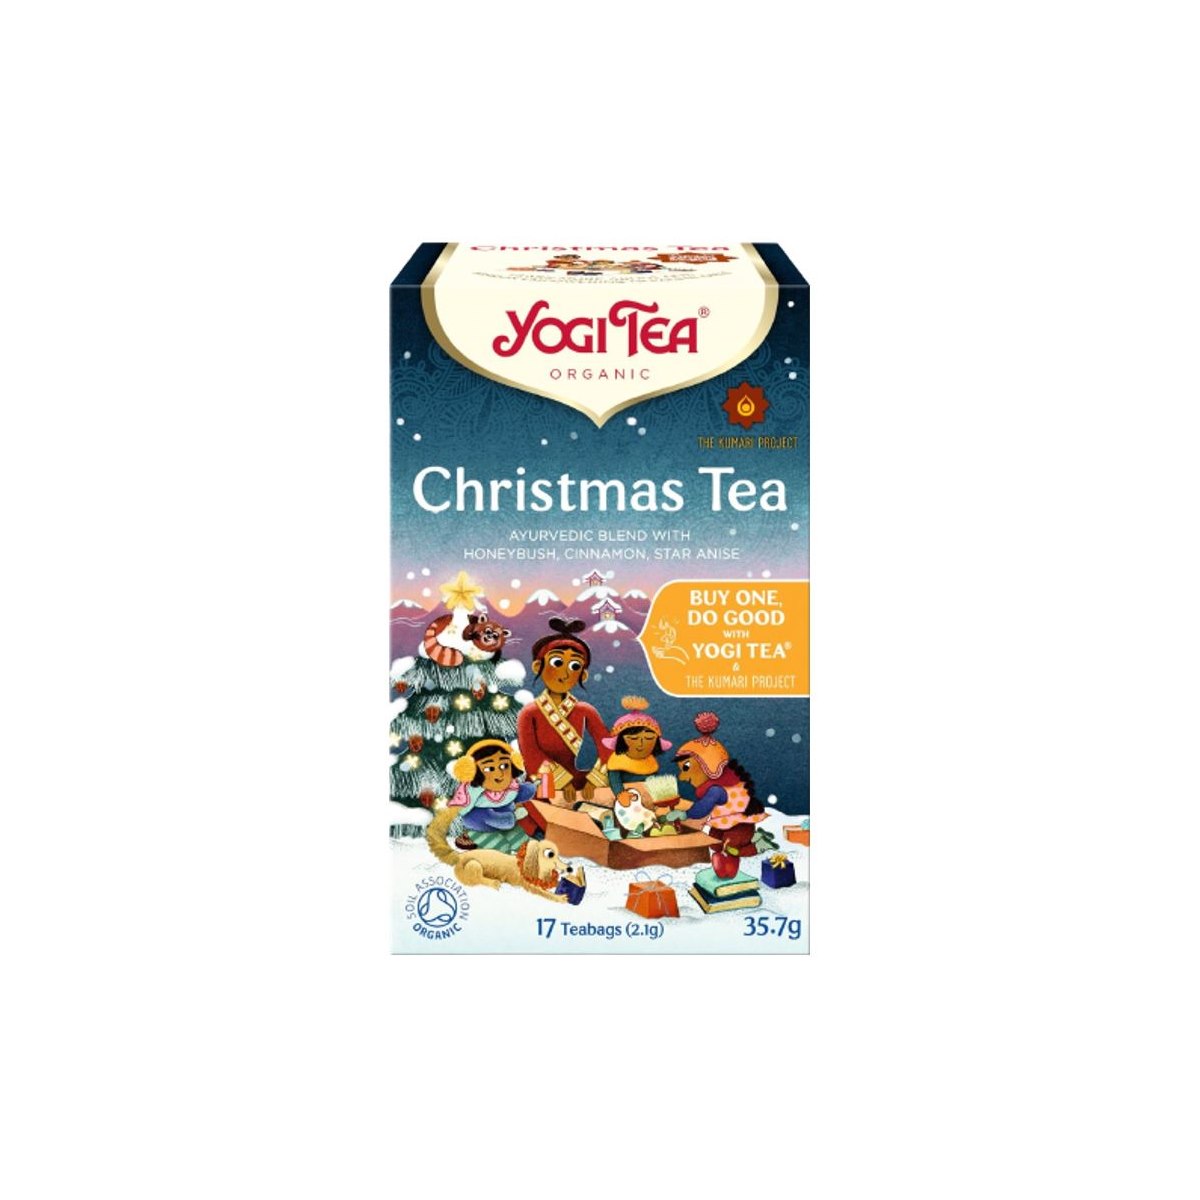 Yogi Tea Christmas Tea - 17 Teabags